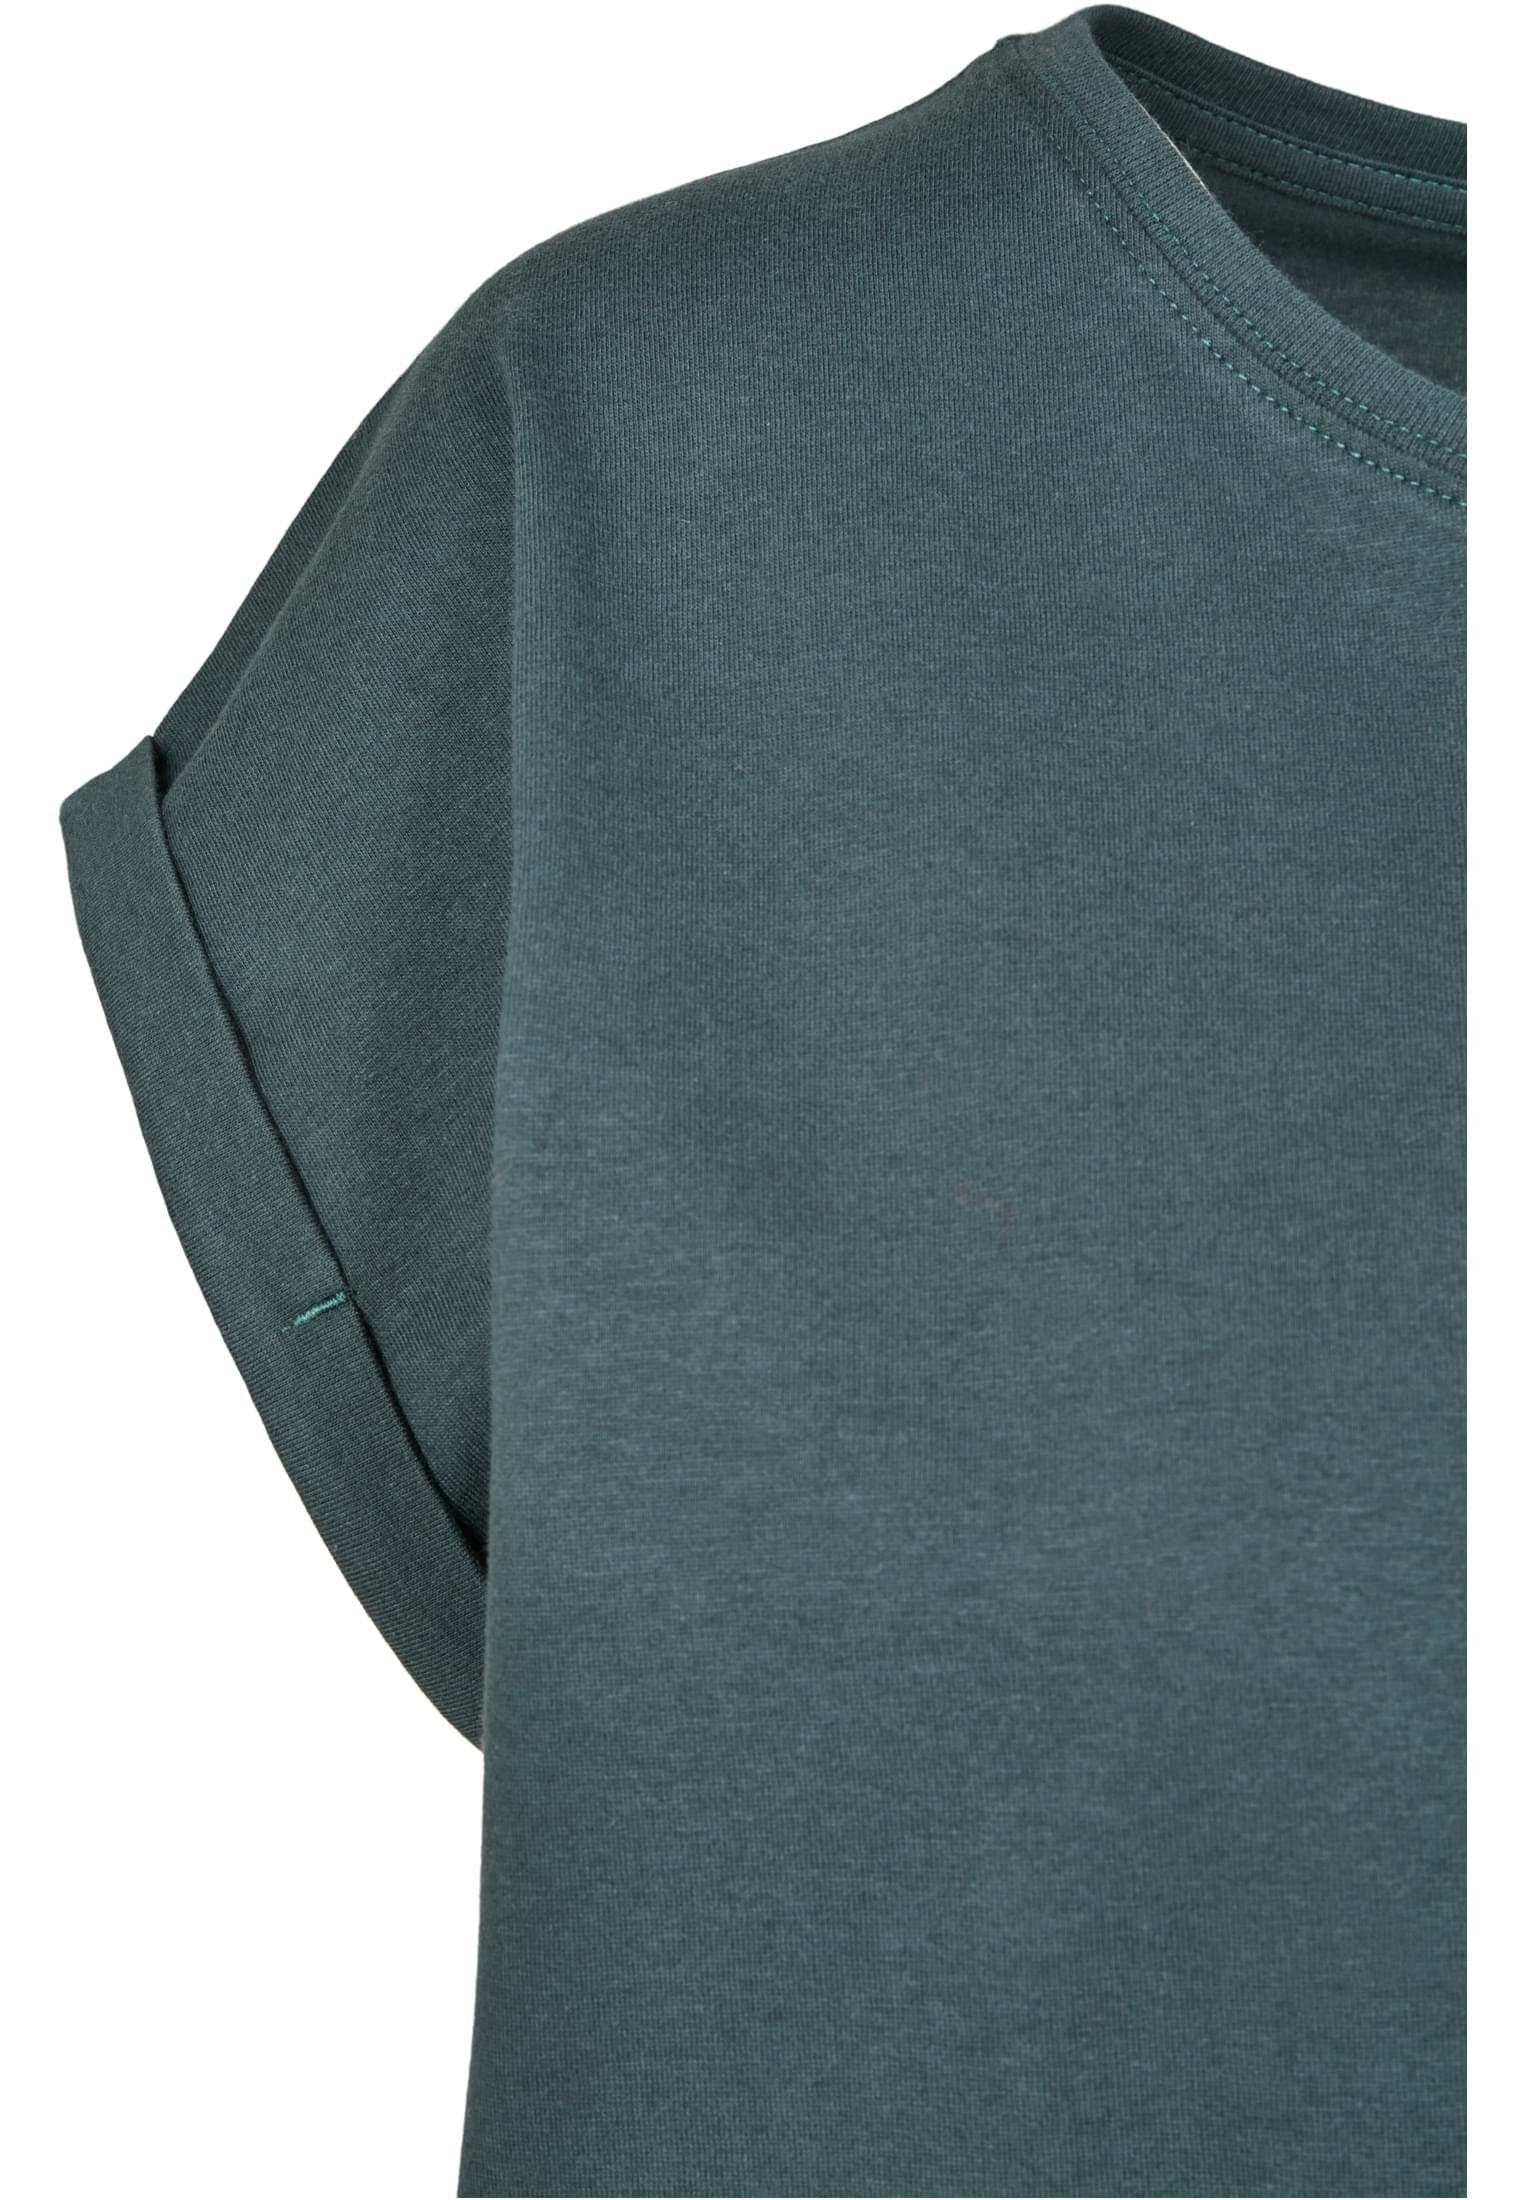 T-Shirt bottlegreen URBAN CLASSICS Shoulder TB771 Extended